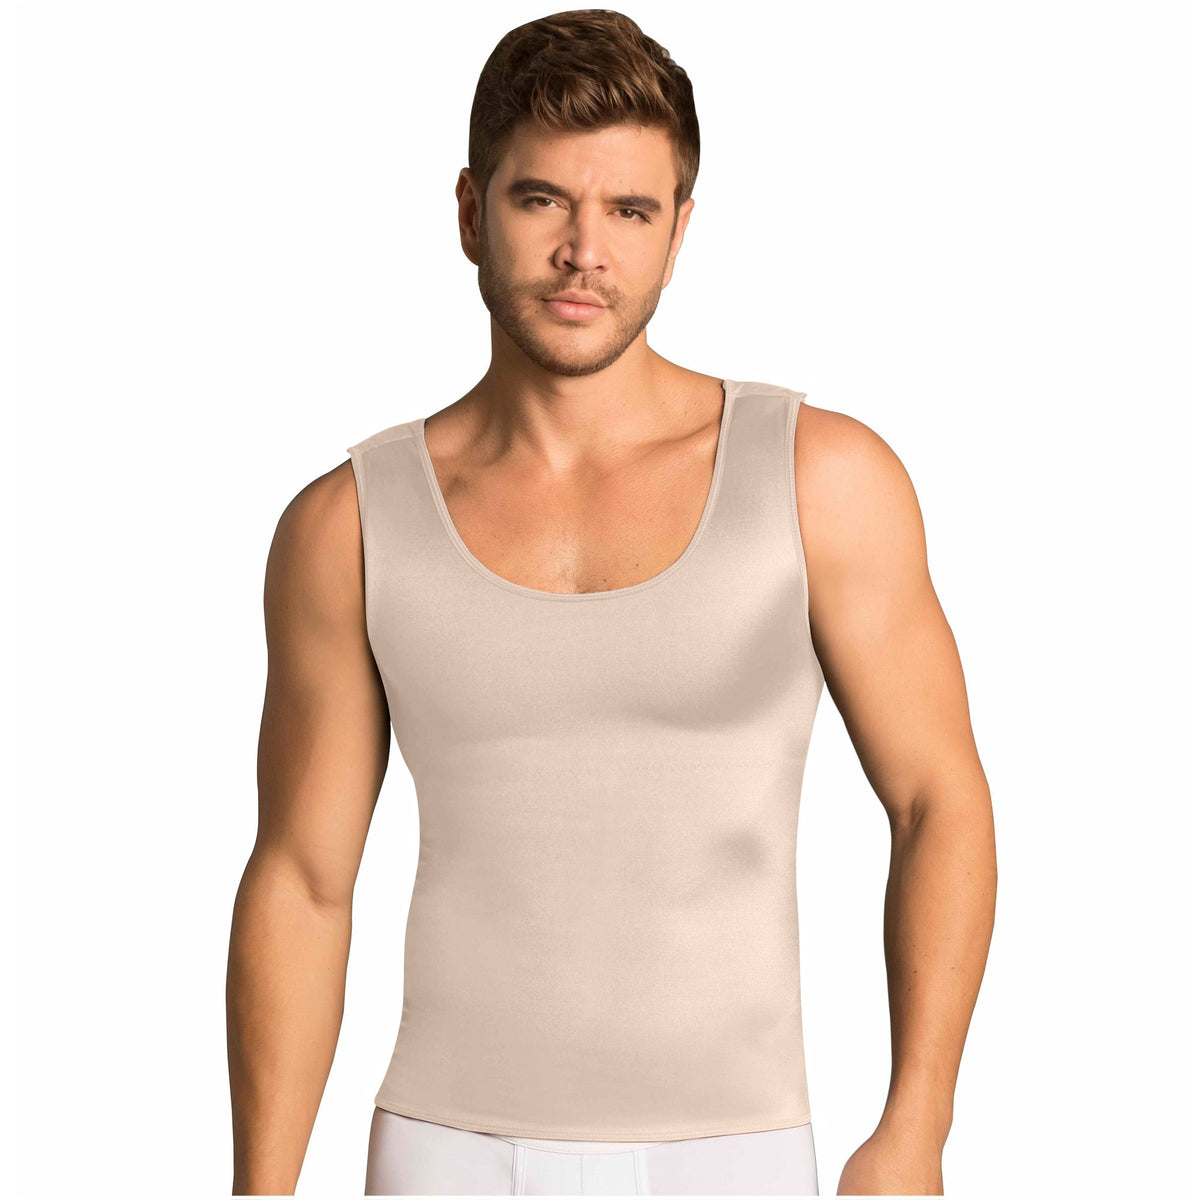 Fajas MariaE FH101 | Men's Body Shaper Compression Vest | Tummy & Back Control